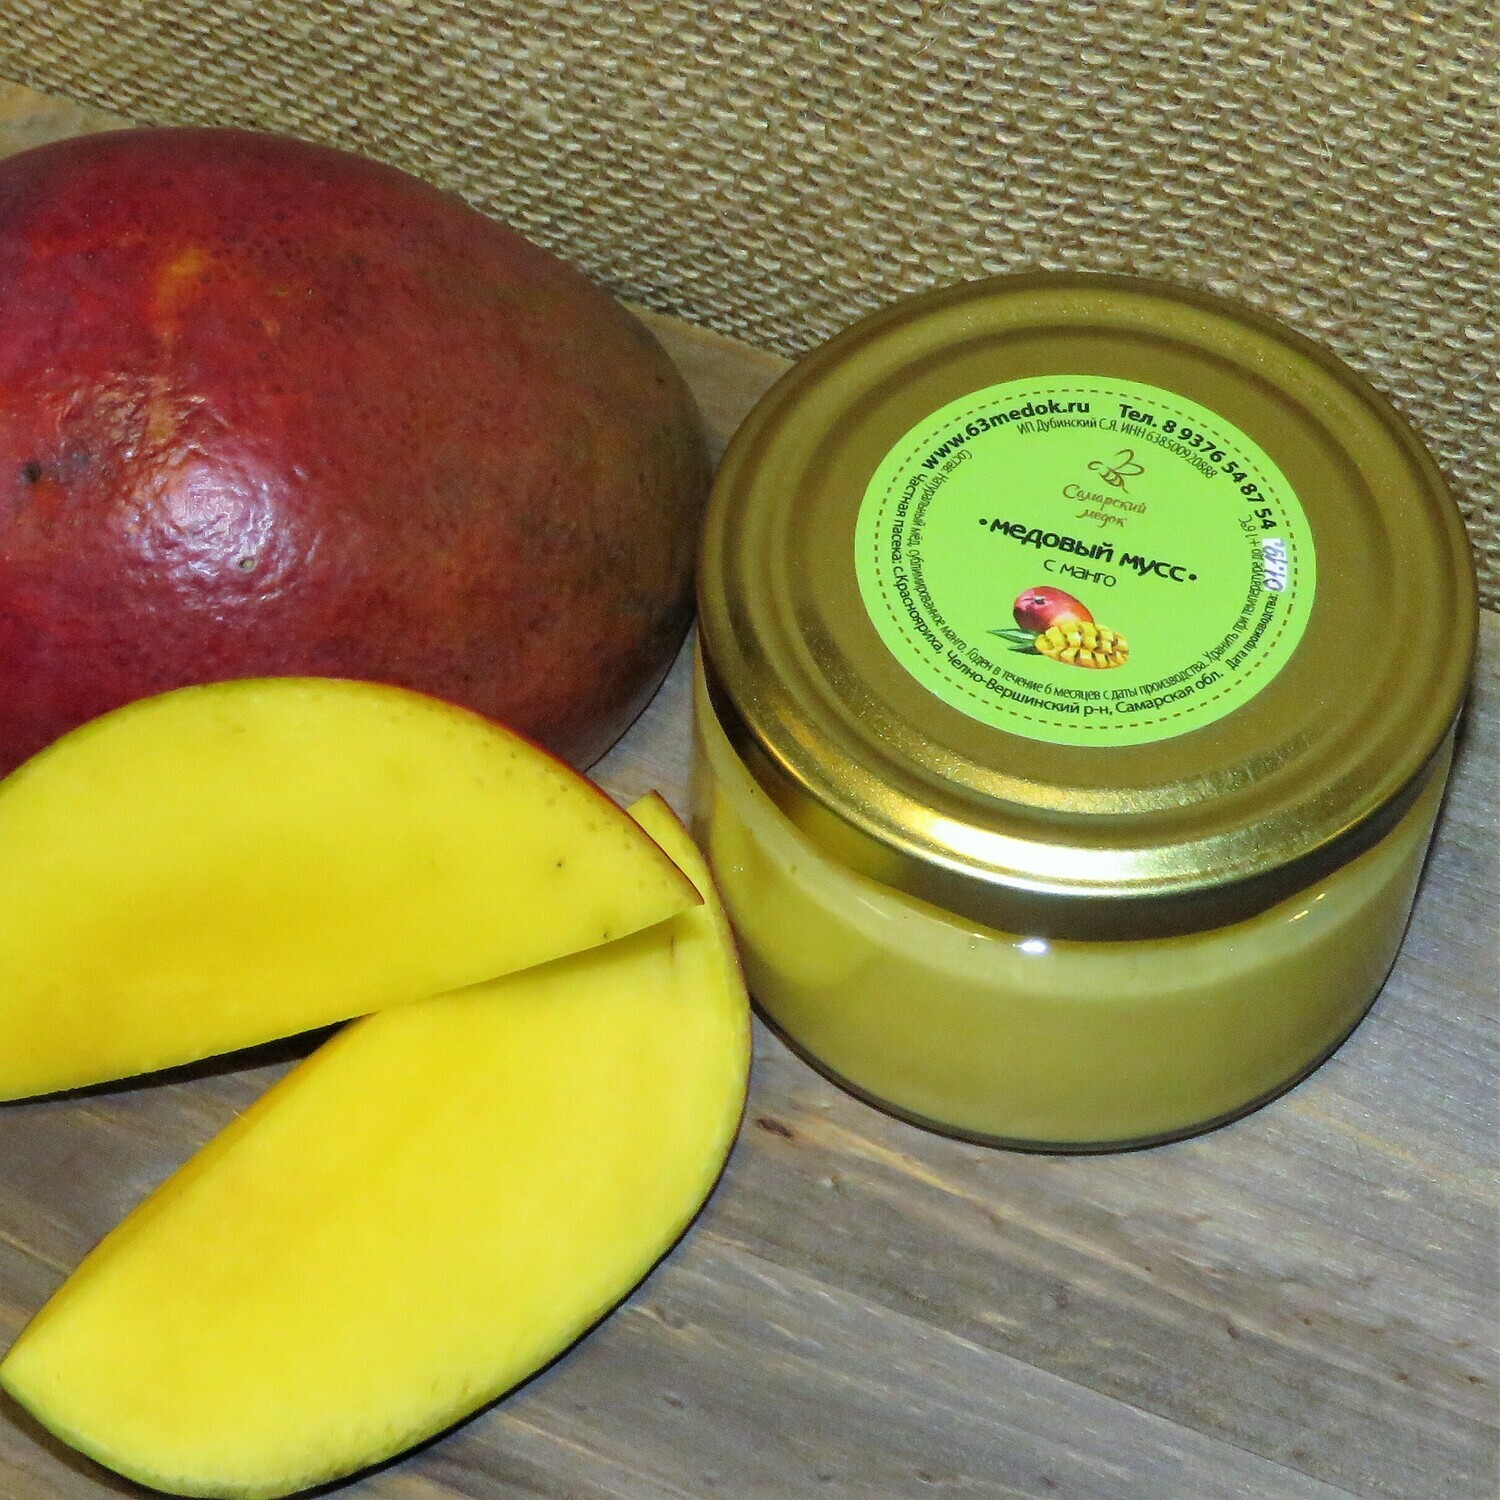 Медовый мусс с манго, 250 мл.